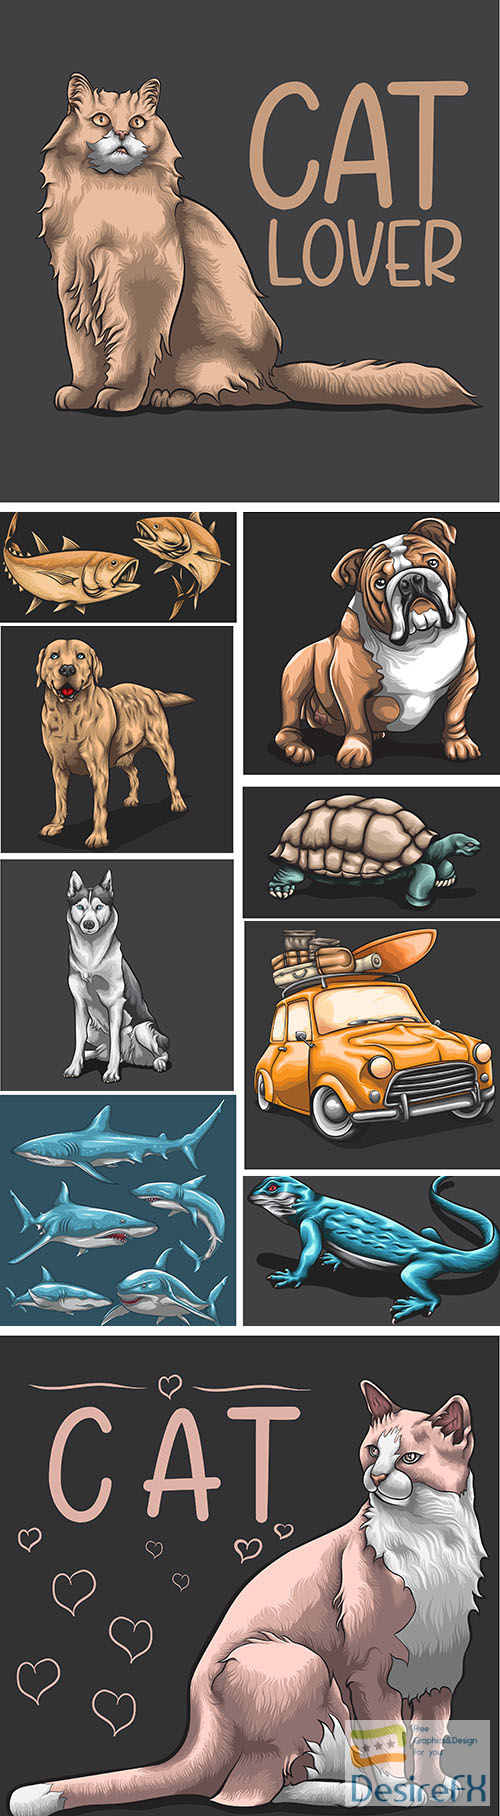 Animals concept cartoon design